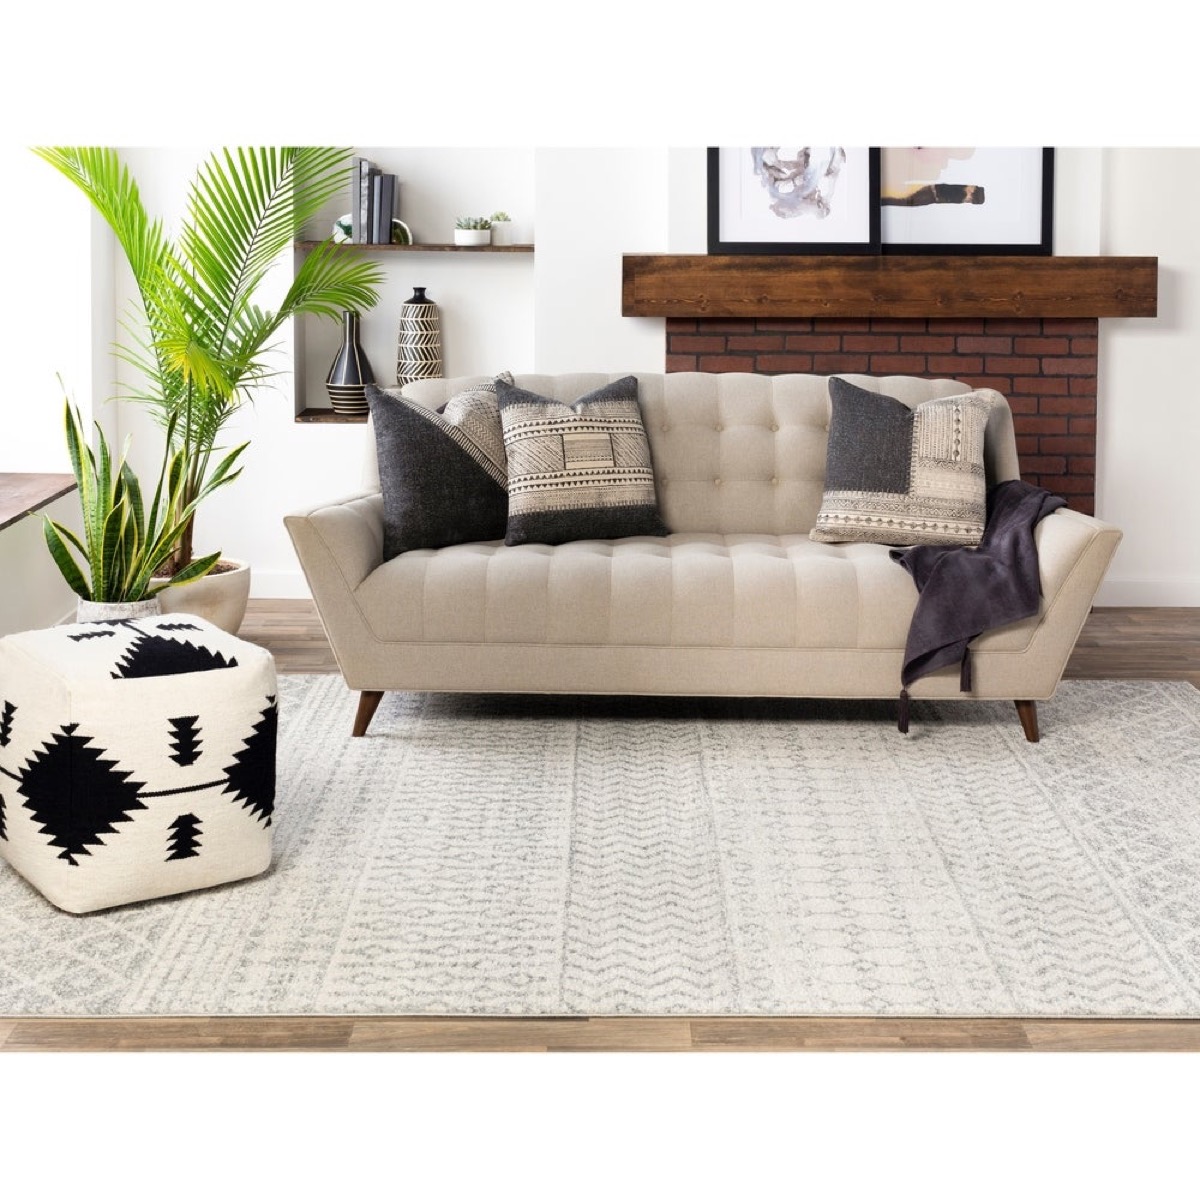 Boho room with gray rug and sofa